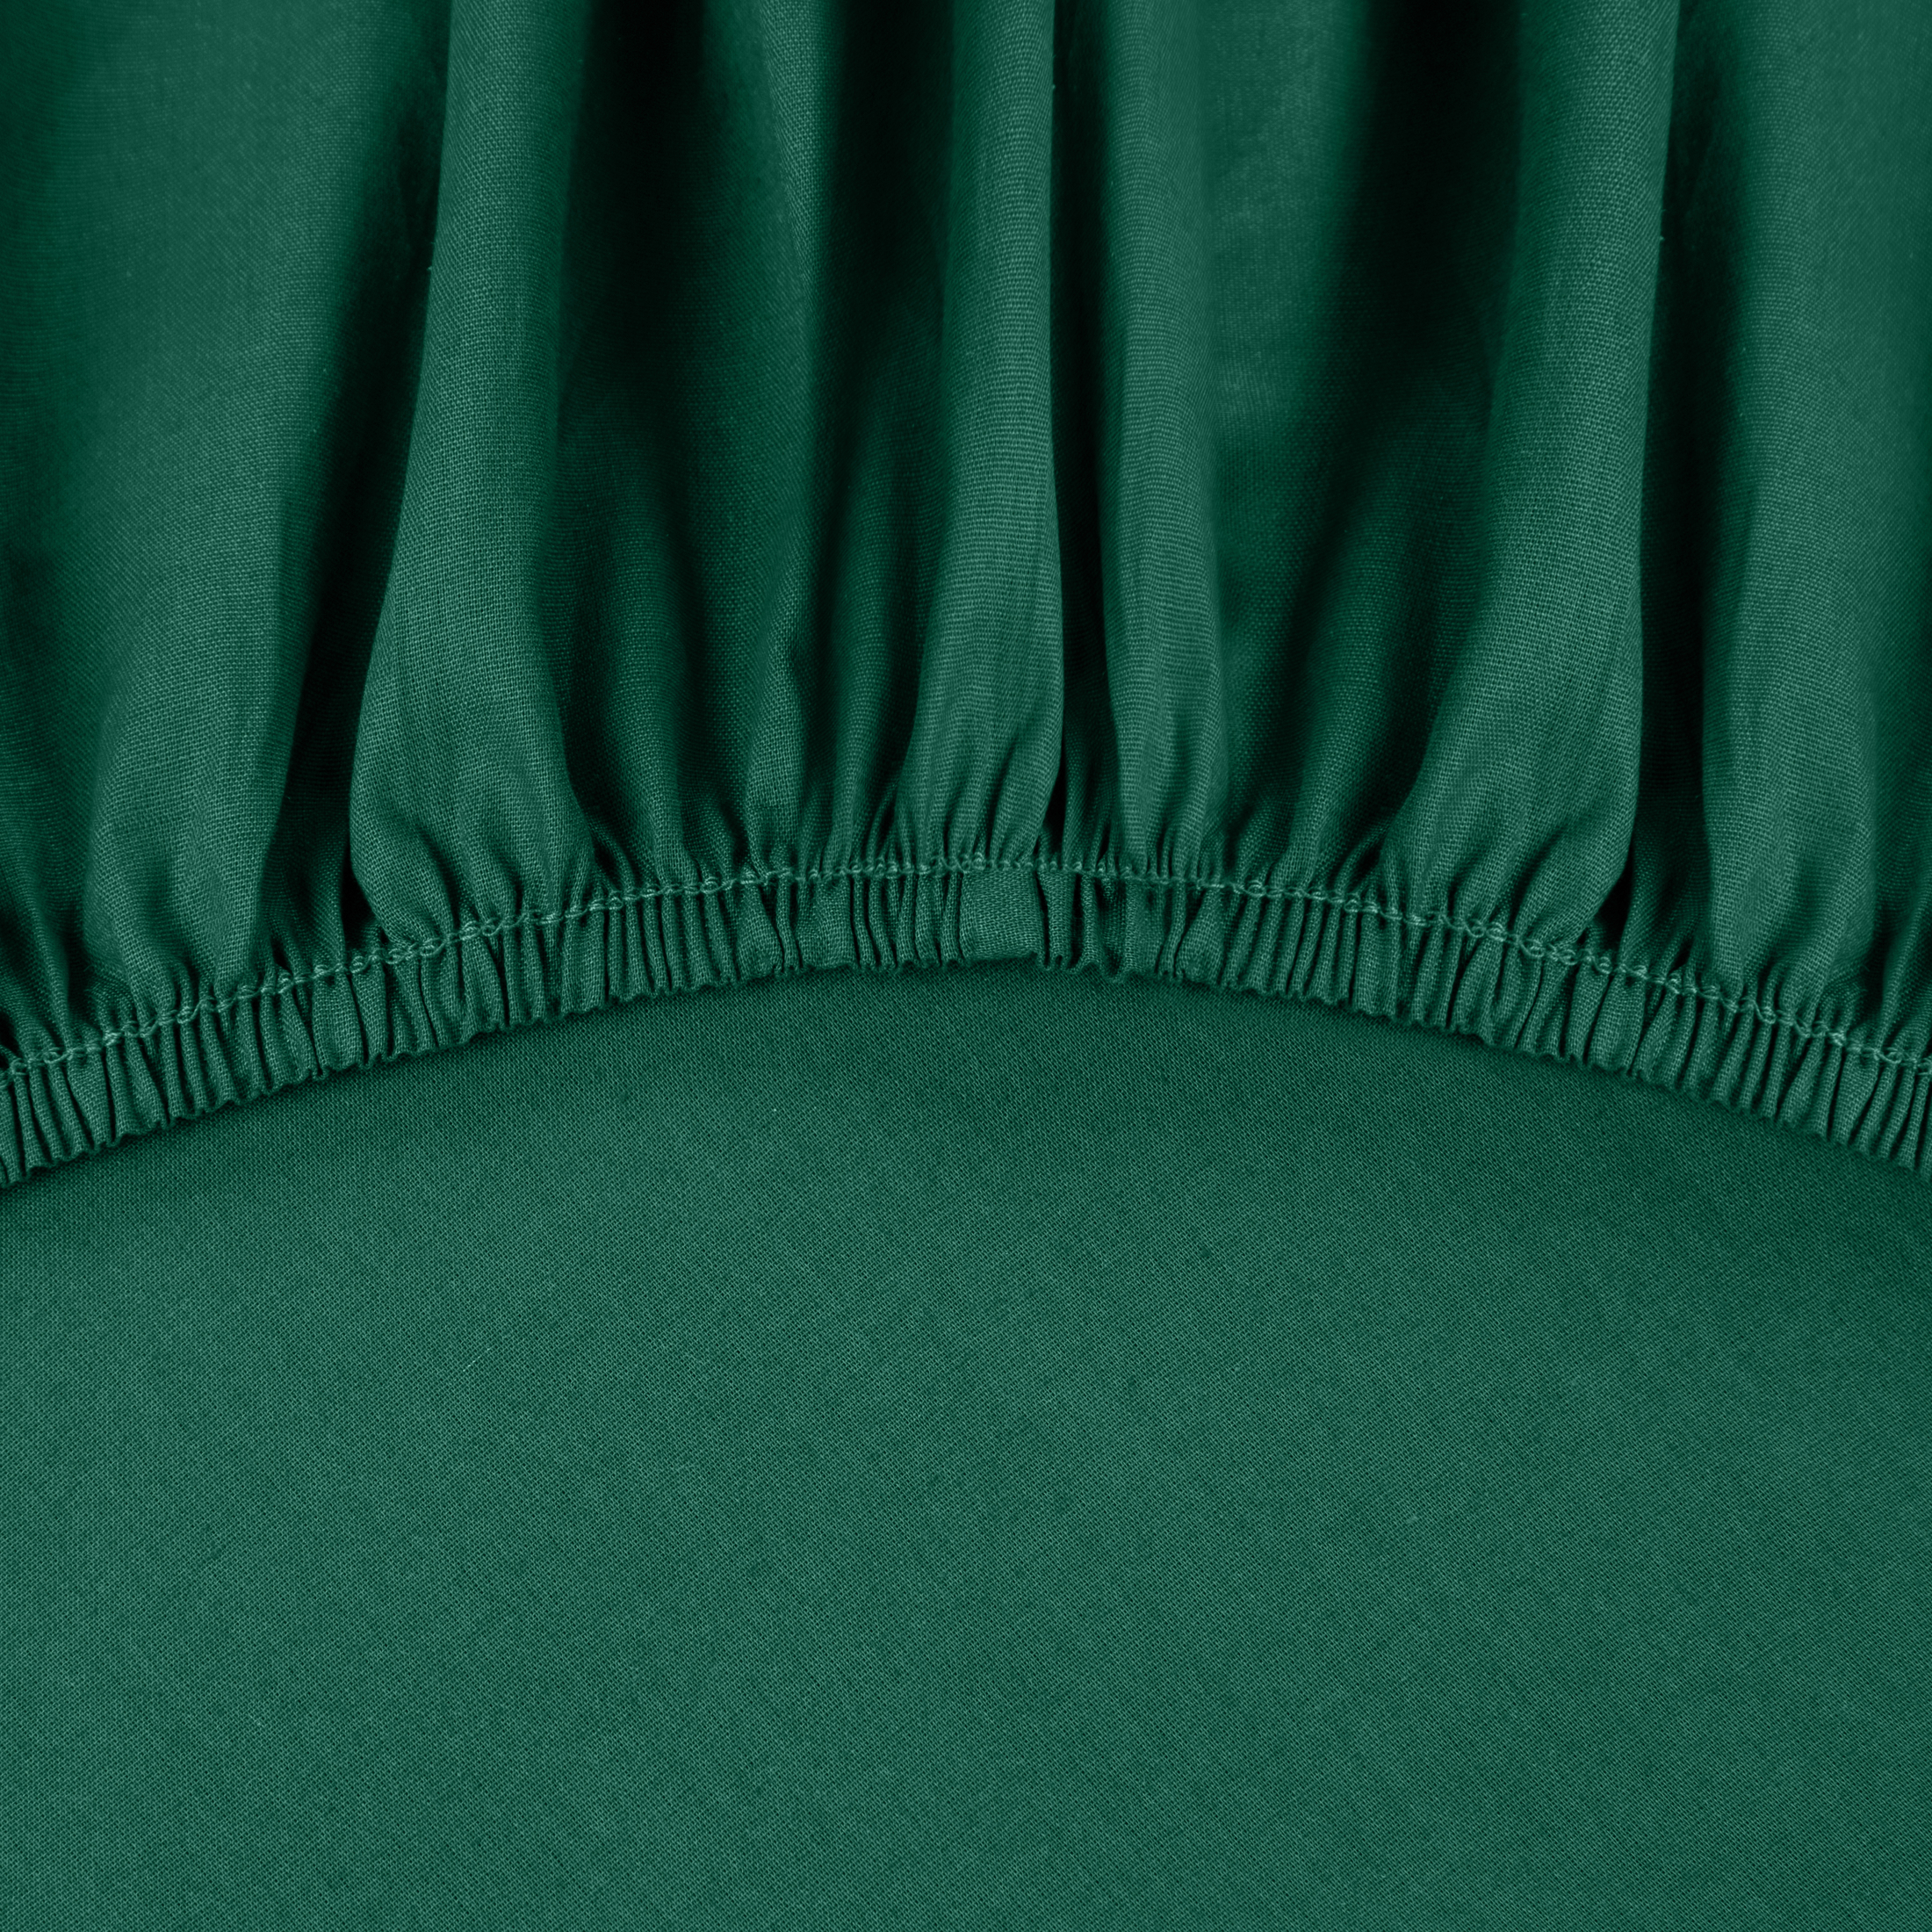 Paklodė su guma “Ranforce” emerald įvairių dydžių